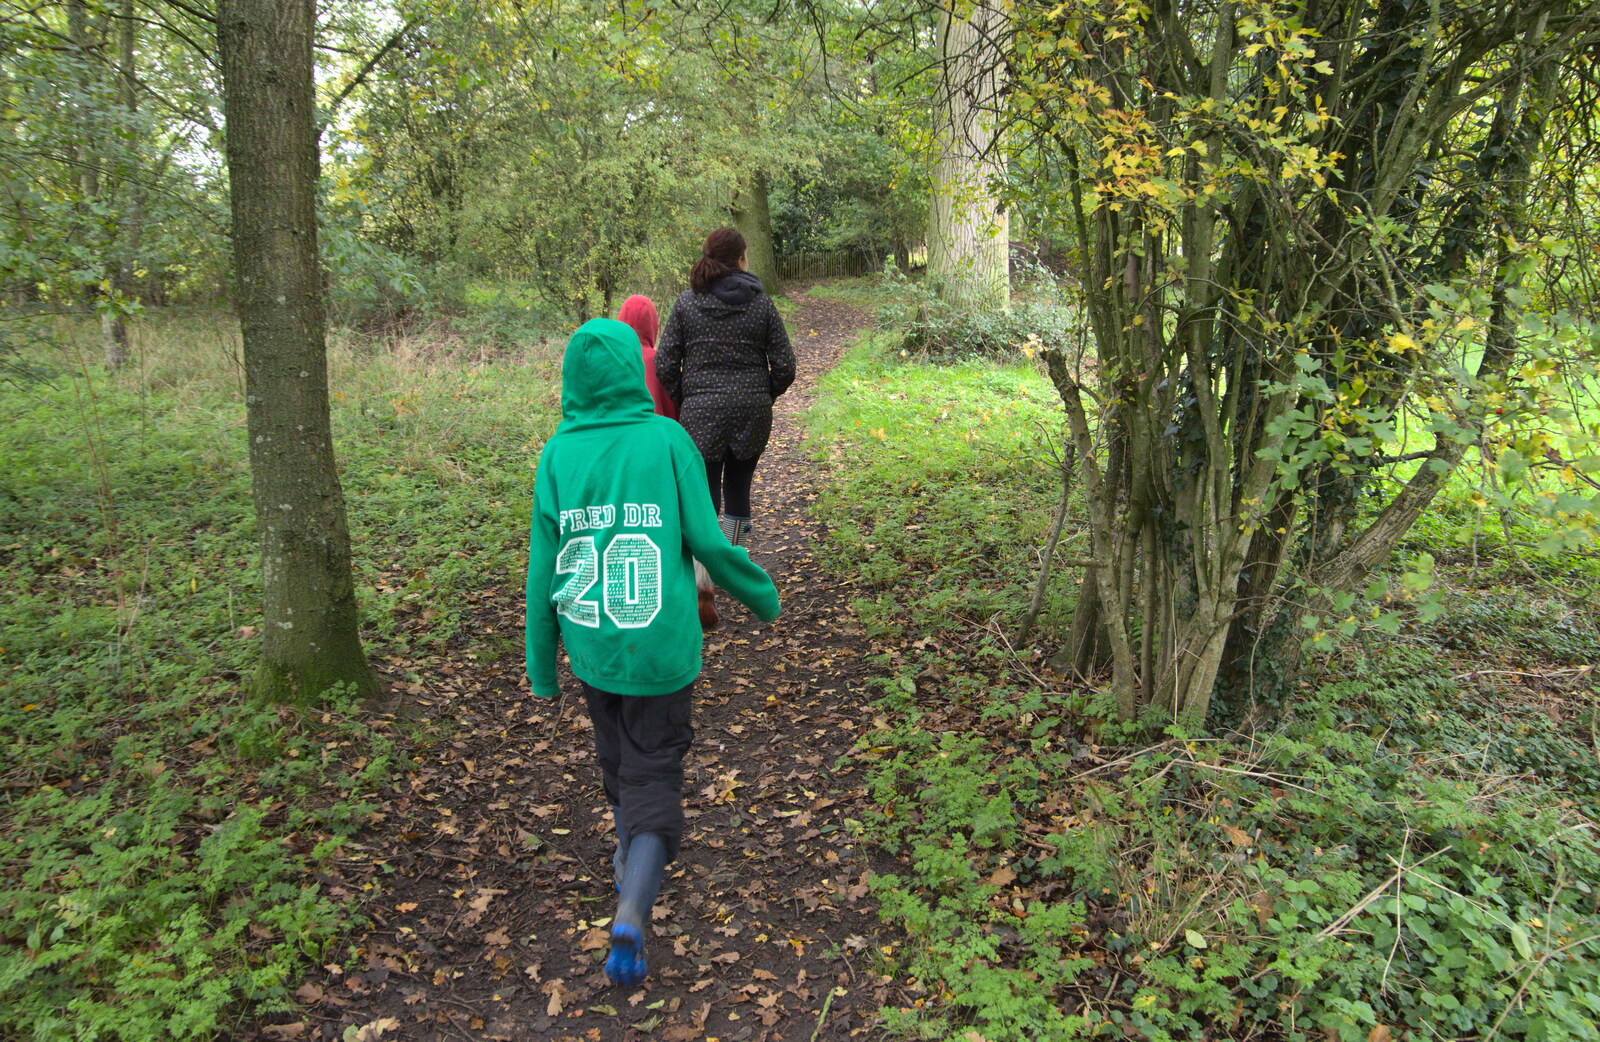 We head off into the woods from A Walk Around Thornham Estate, Thornham Magna, Suffolk - 18th October 2020